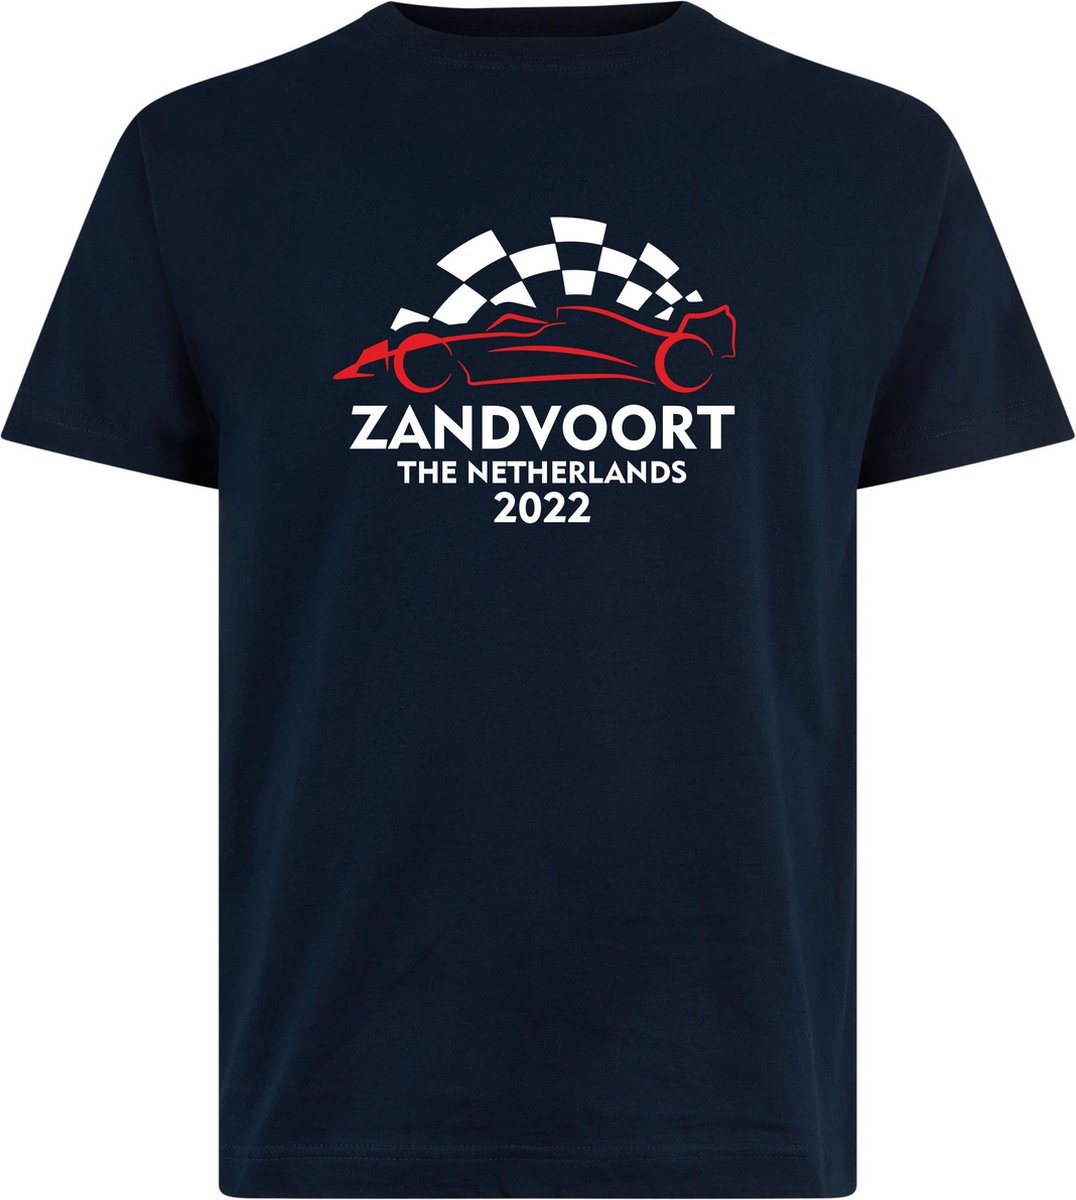 T-shirt Zandvoort 2022 met raceauto | Max Verstappen / Red Bull Racing / Formule 1 fan | Grand Prix Circuit Zandvoort | kleding shirt | Navy | maat 5XL